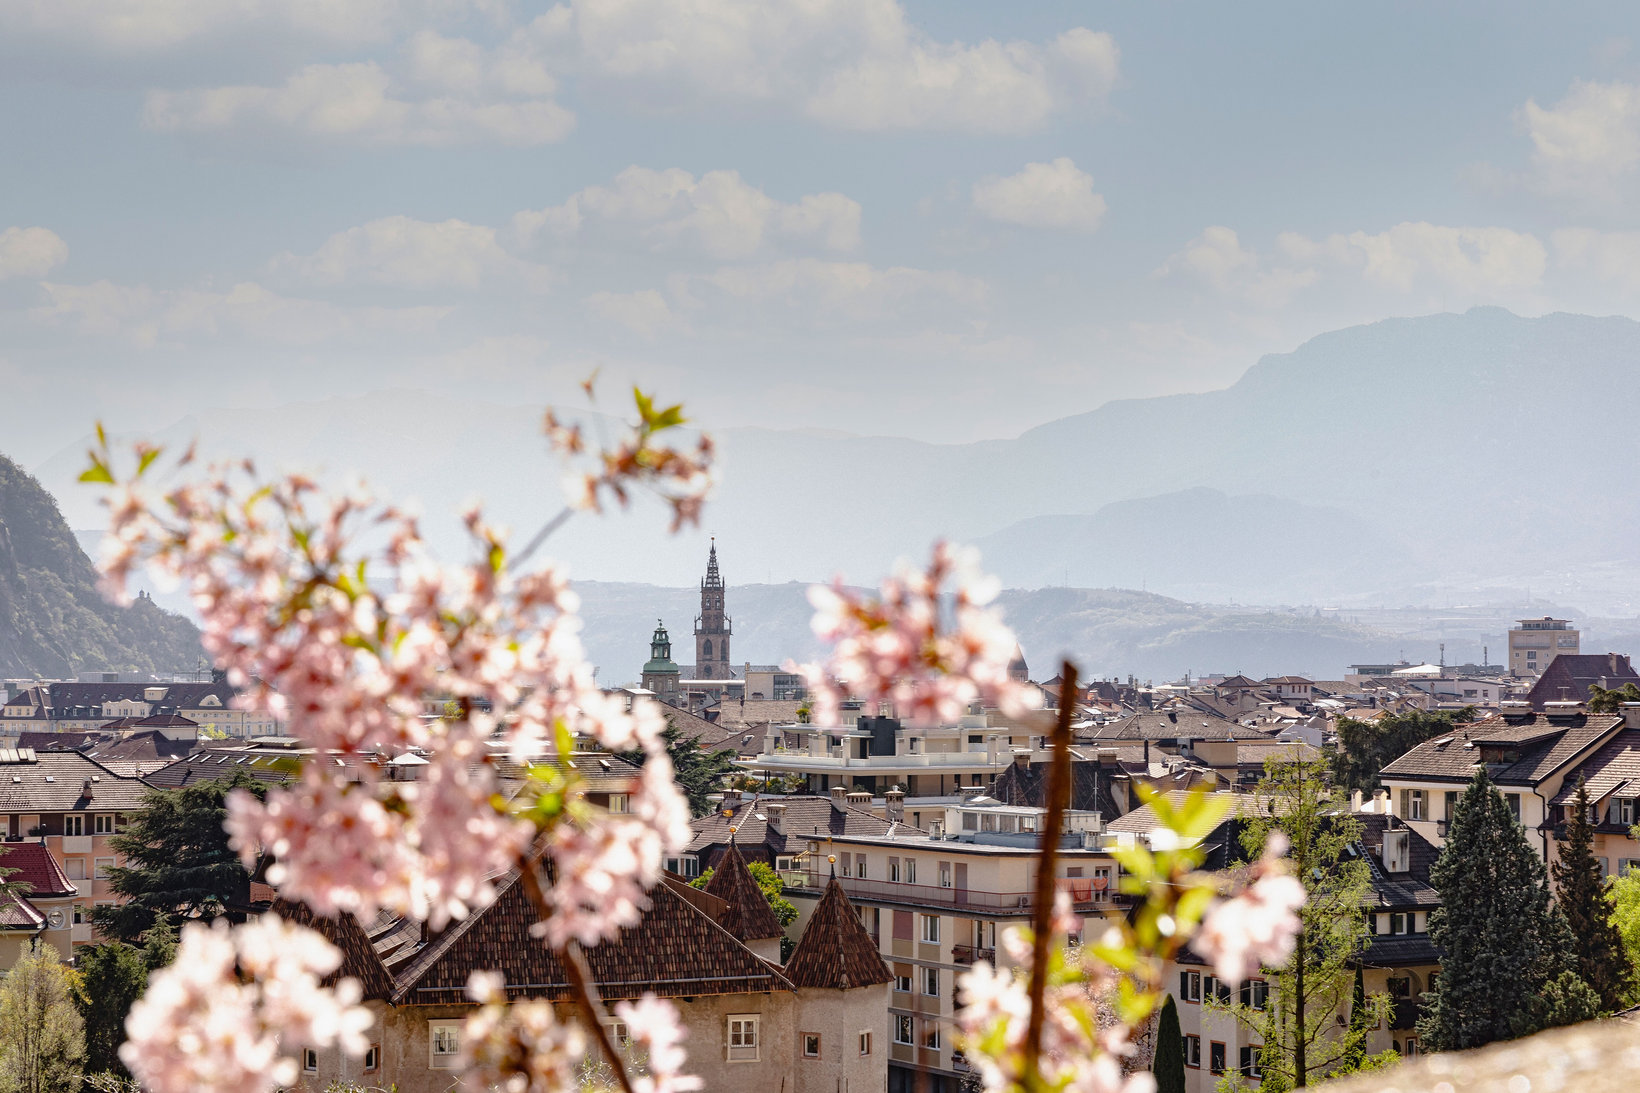 Spring in Bolzano